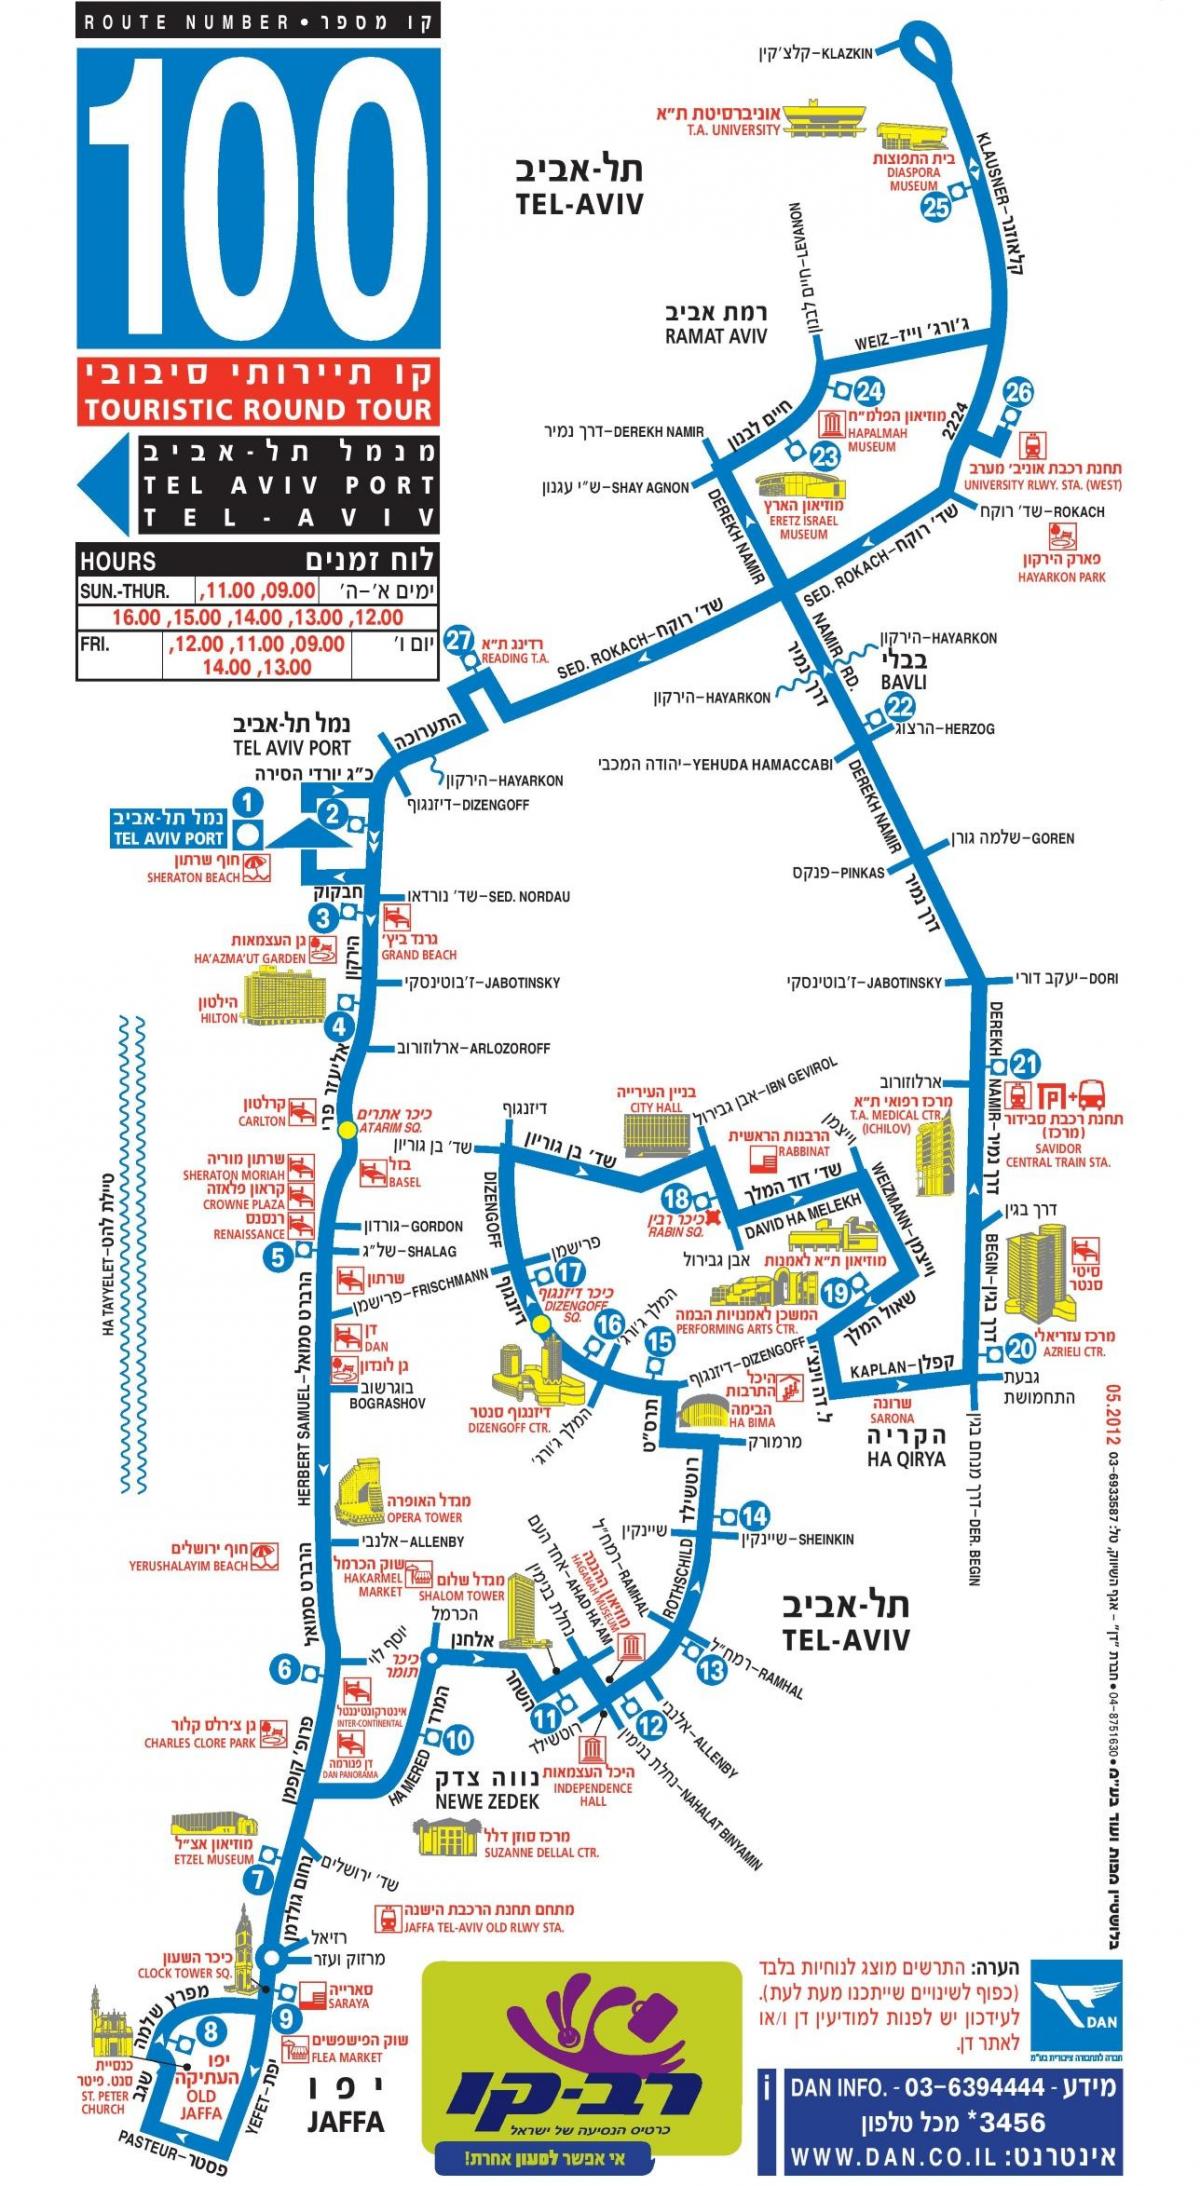 Mappa dei tour in autobus Hop On Hop Off di Tel Aviv